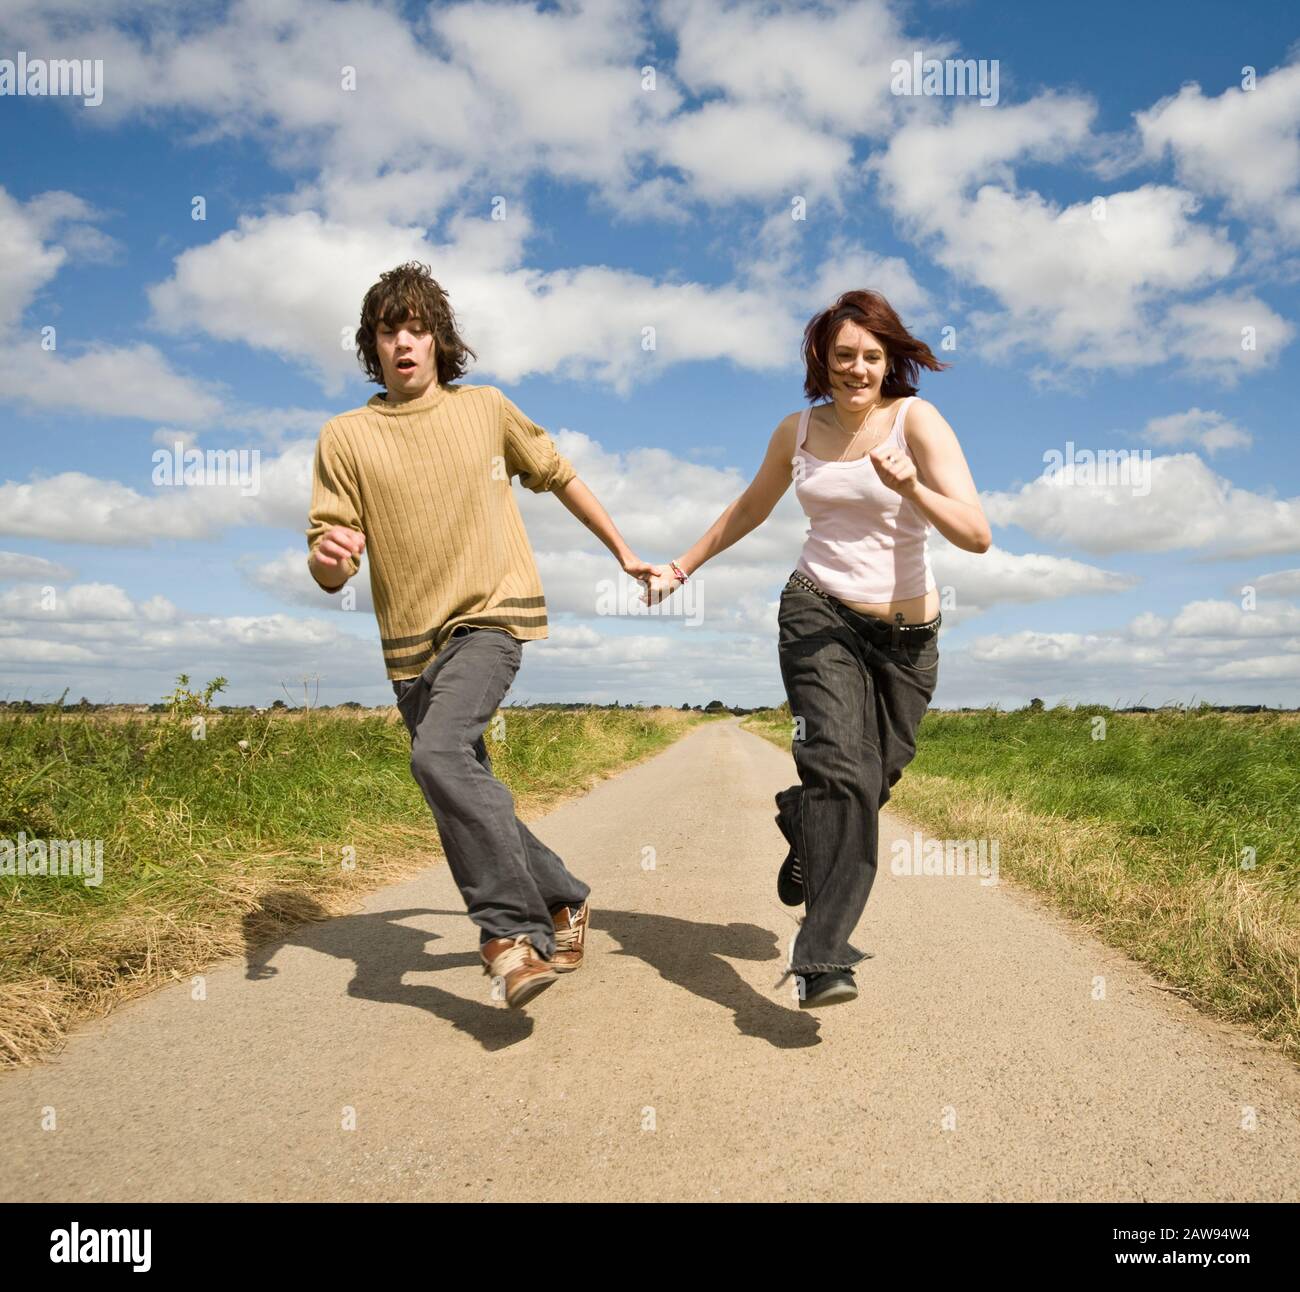 Una pareja adolescente que sostiene las manos y que corre por un carril de campo hacia la cámara Foto de stock